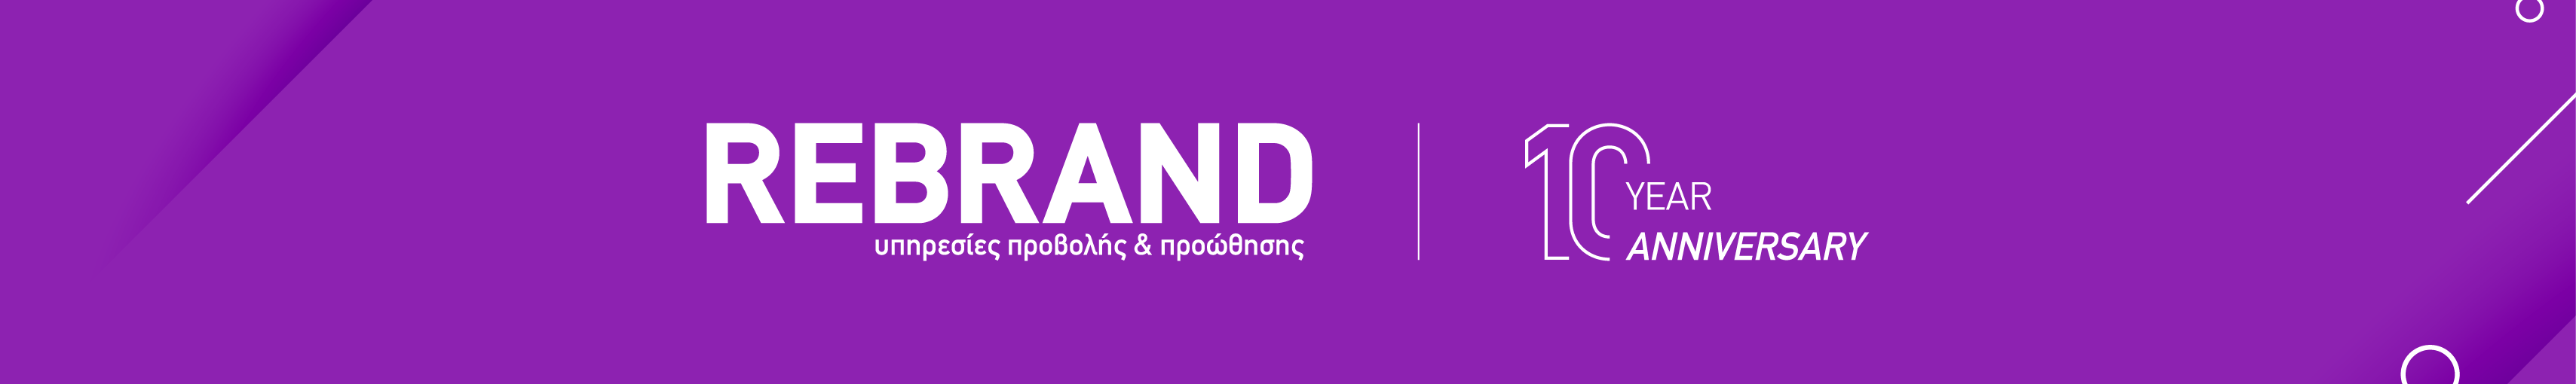 REBRAND - υπηρεσίες προβολής & προώθησης's profile banner